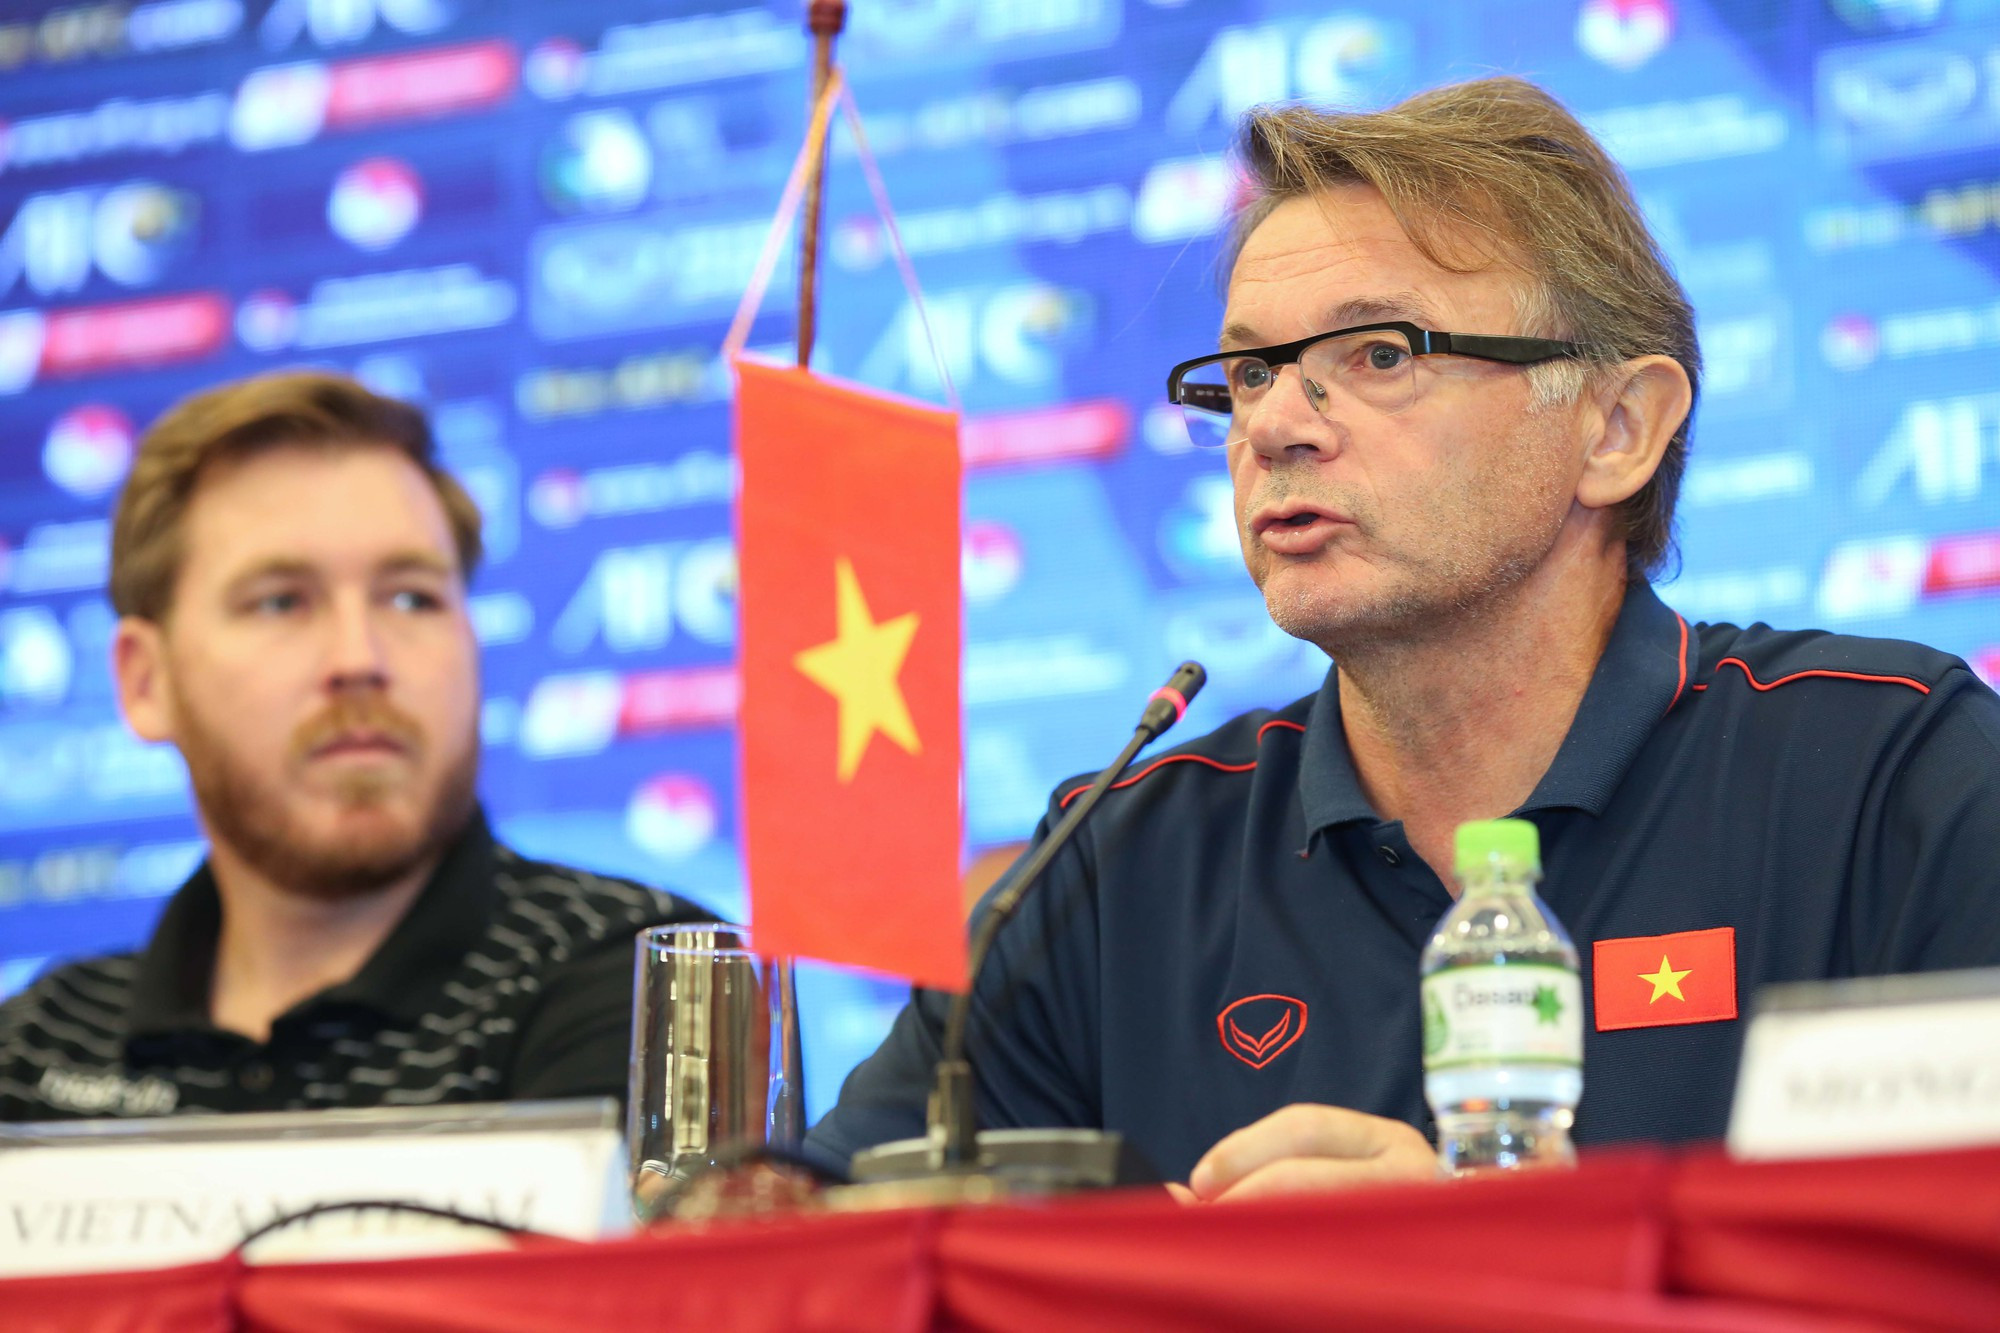 HLV Philippe Troussier sắp ra mắt, dẫn dắt tuyển Việt Nam trong tháng 3